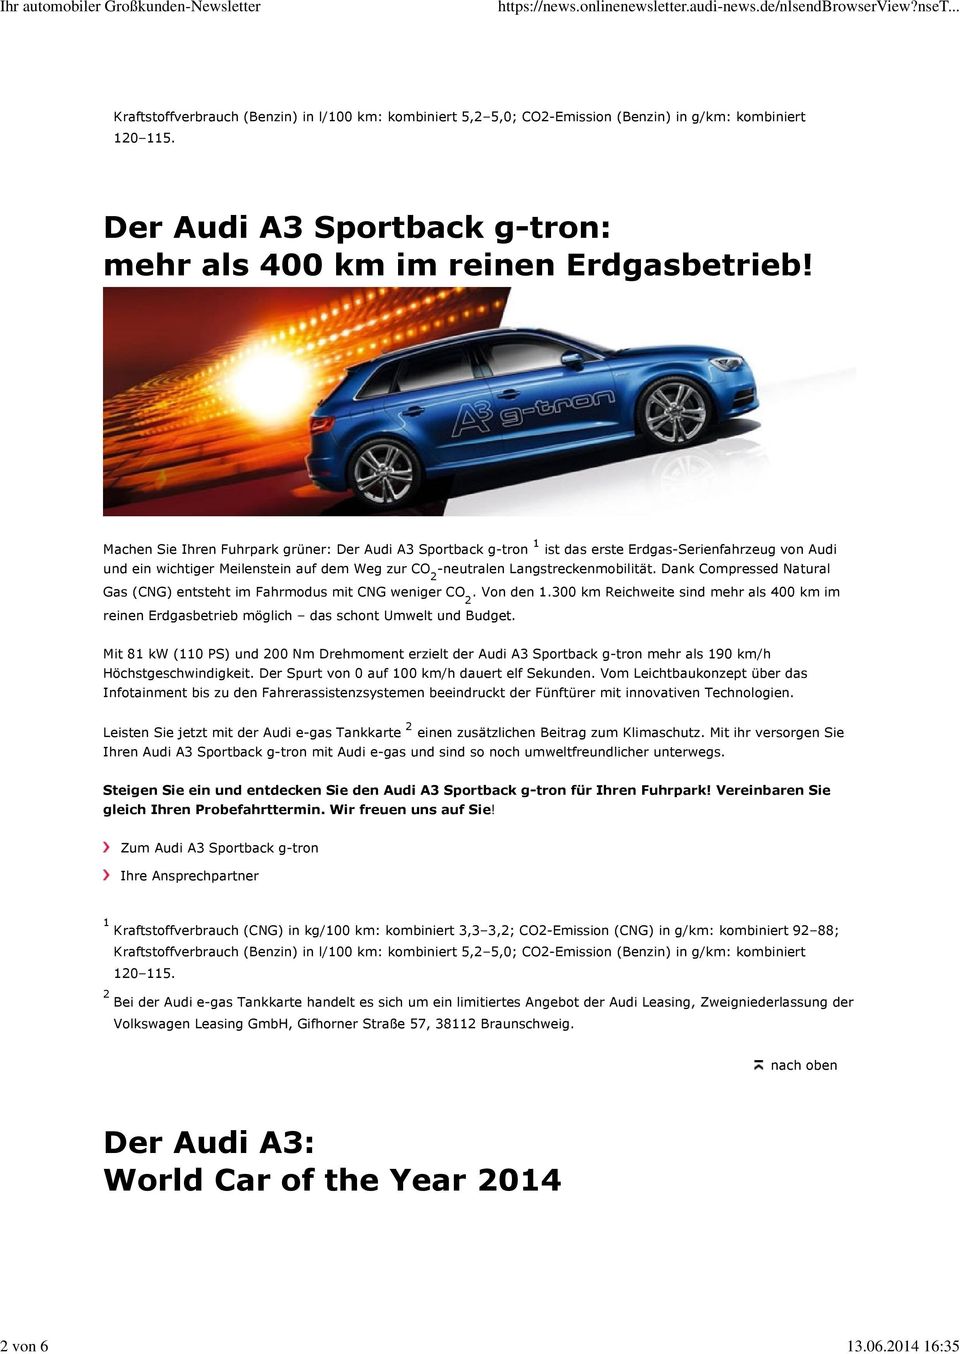 Machen Sie Ihren Fuhrpark grüner: Der Audi A3 Sportback g-tron 1 ist das erste Erdgas-Serienfahrzeug von Audi und ein wichtiger Meilenstein auf dem Weg zur CO -neutralen Langstreckenmobilität.